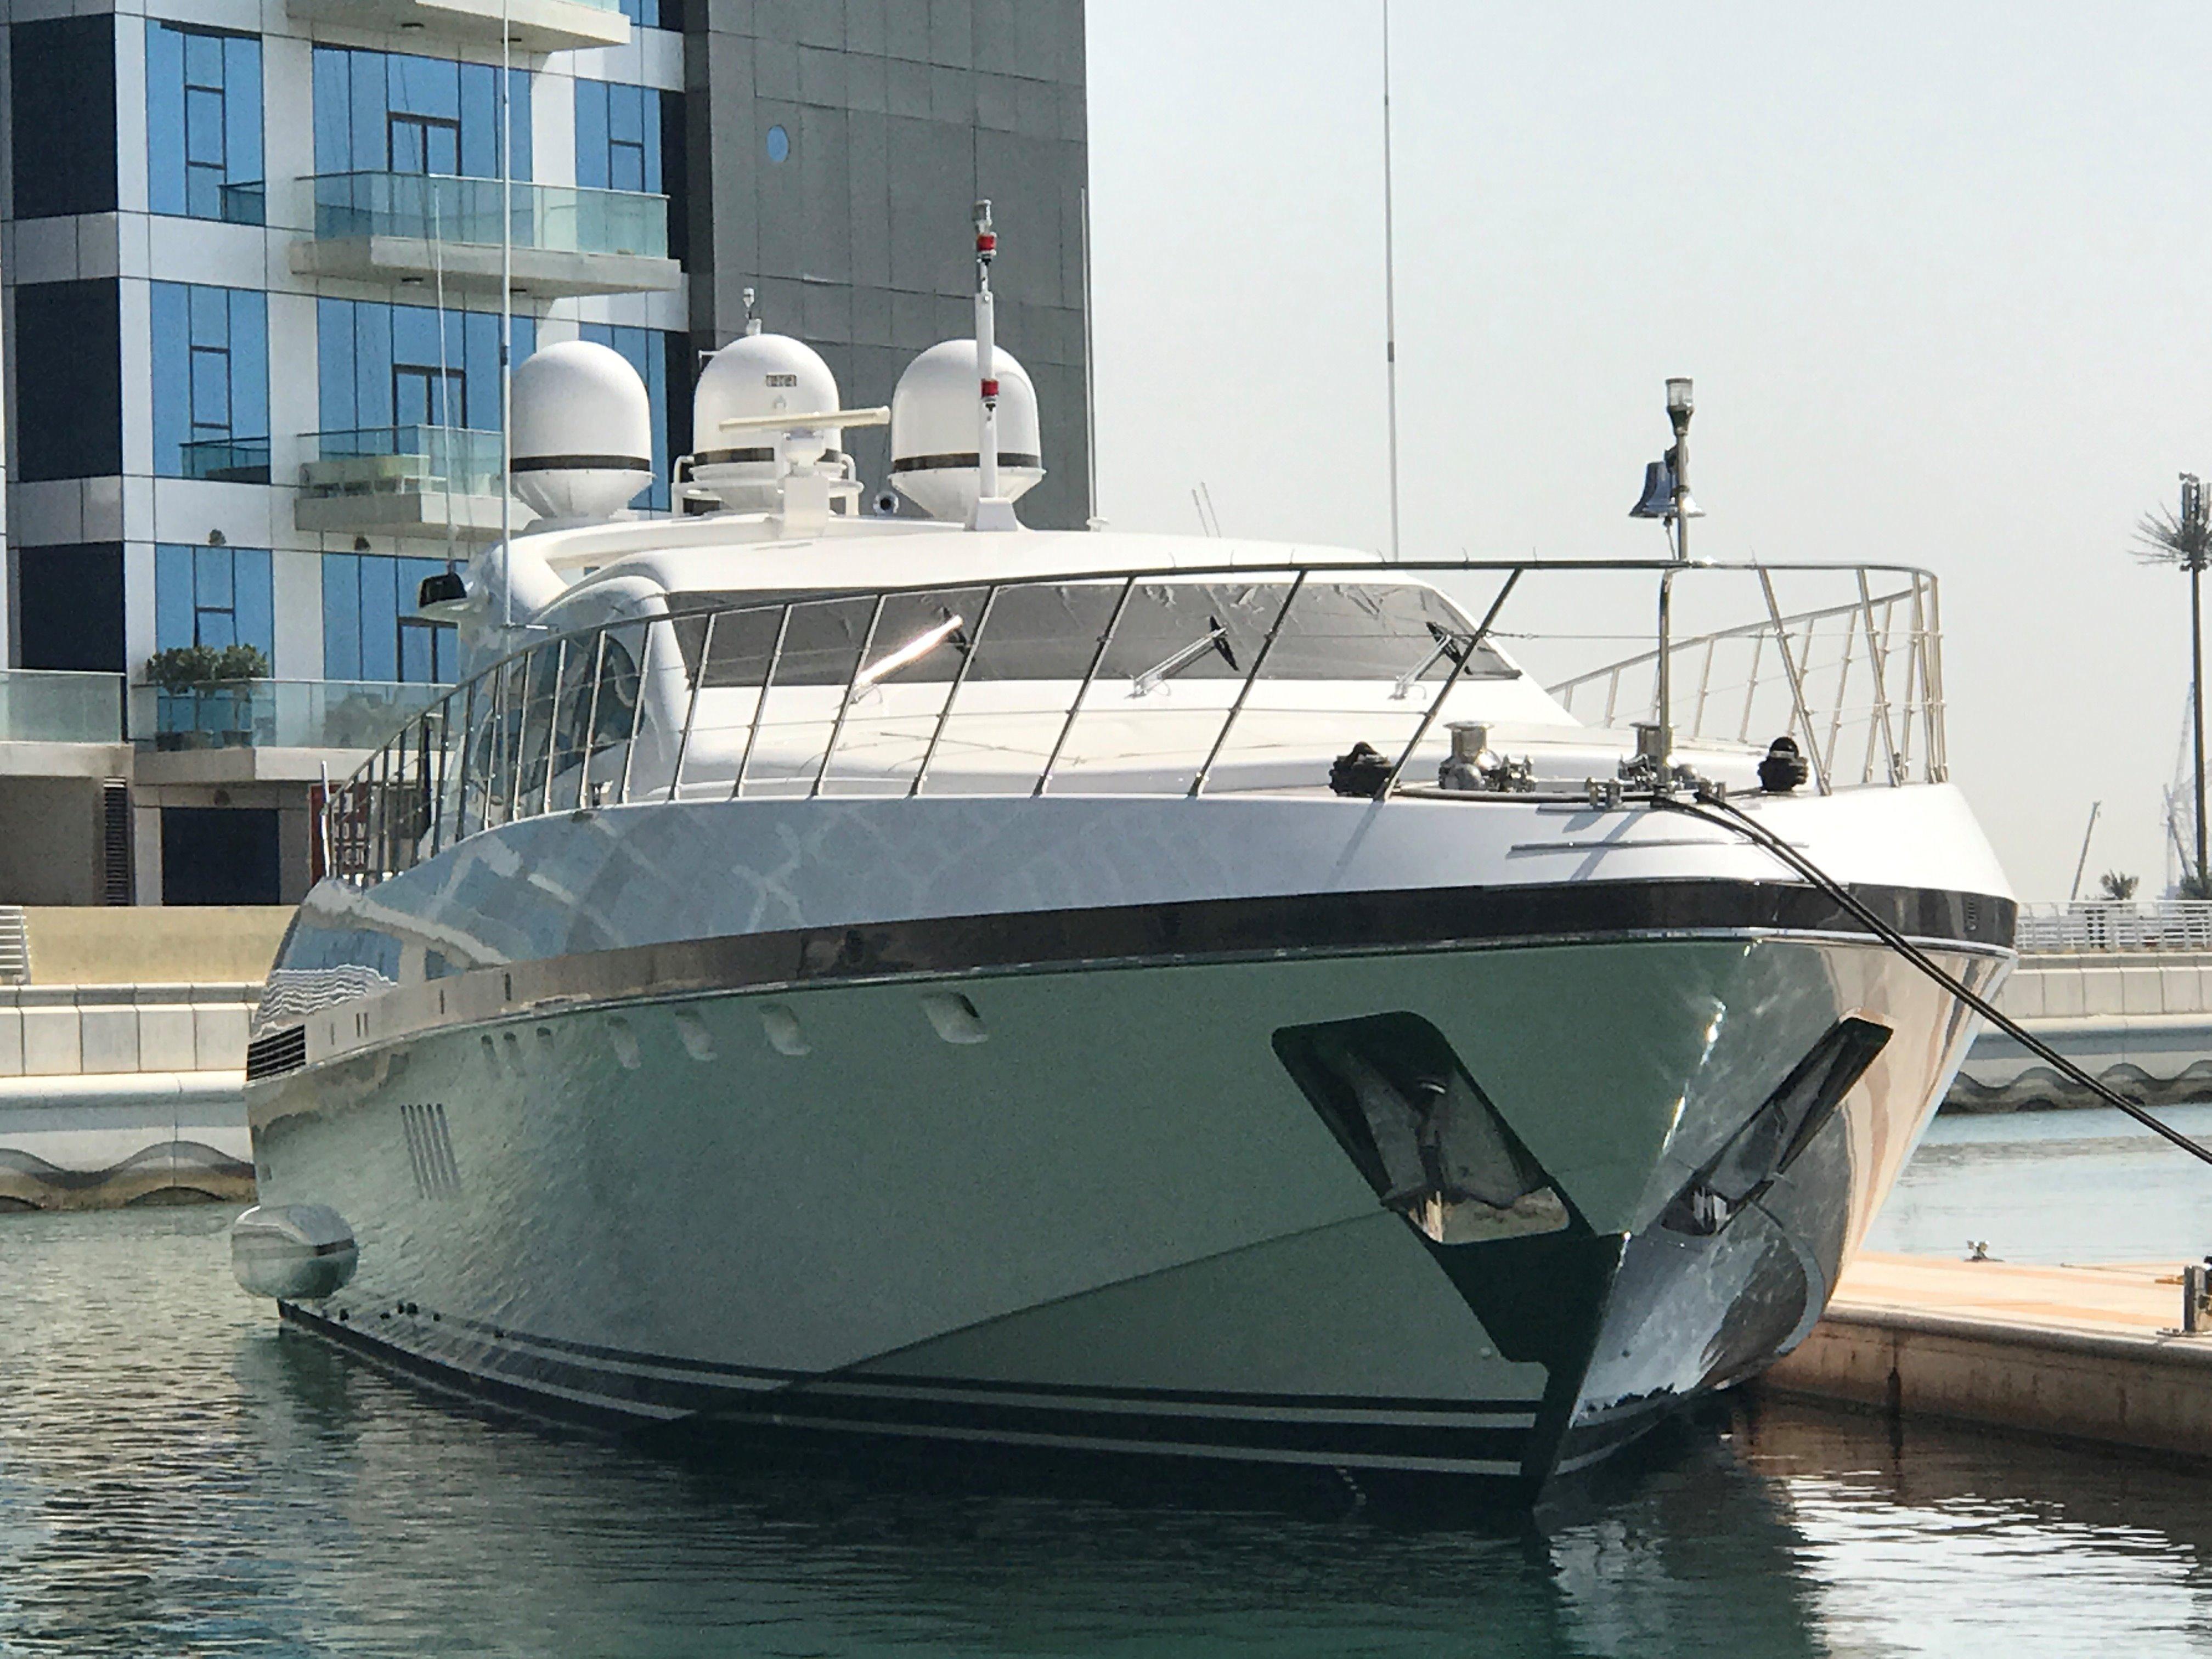 used yacht for sale dubai